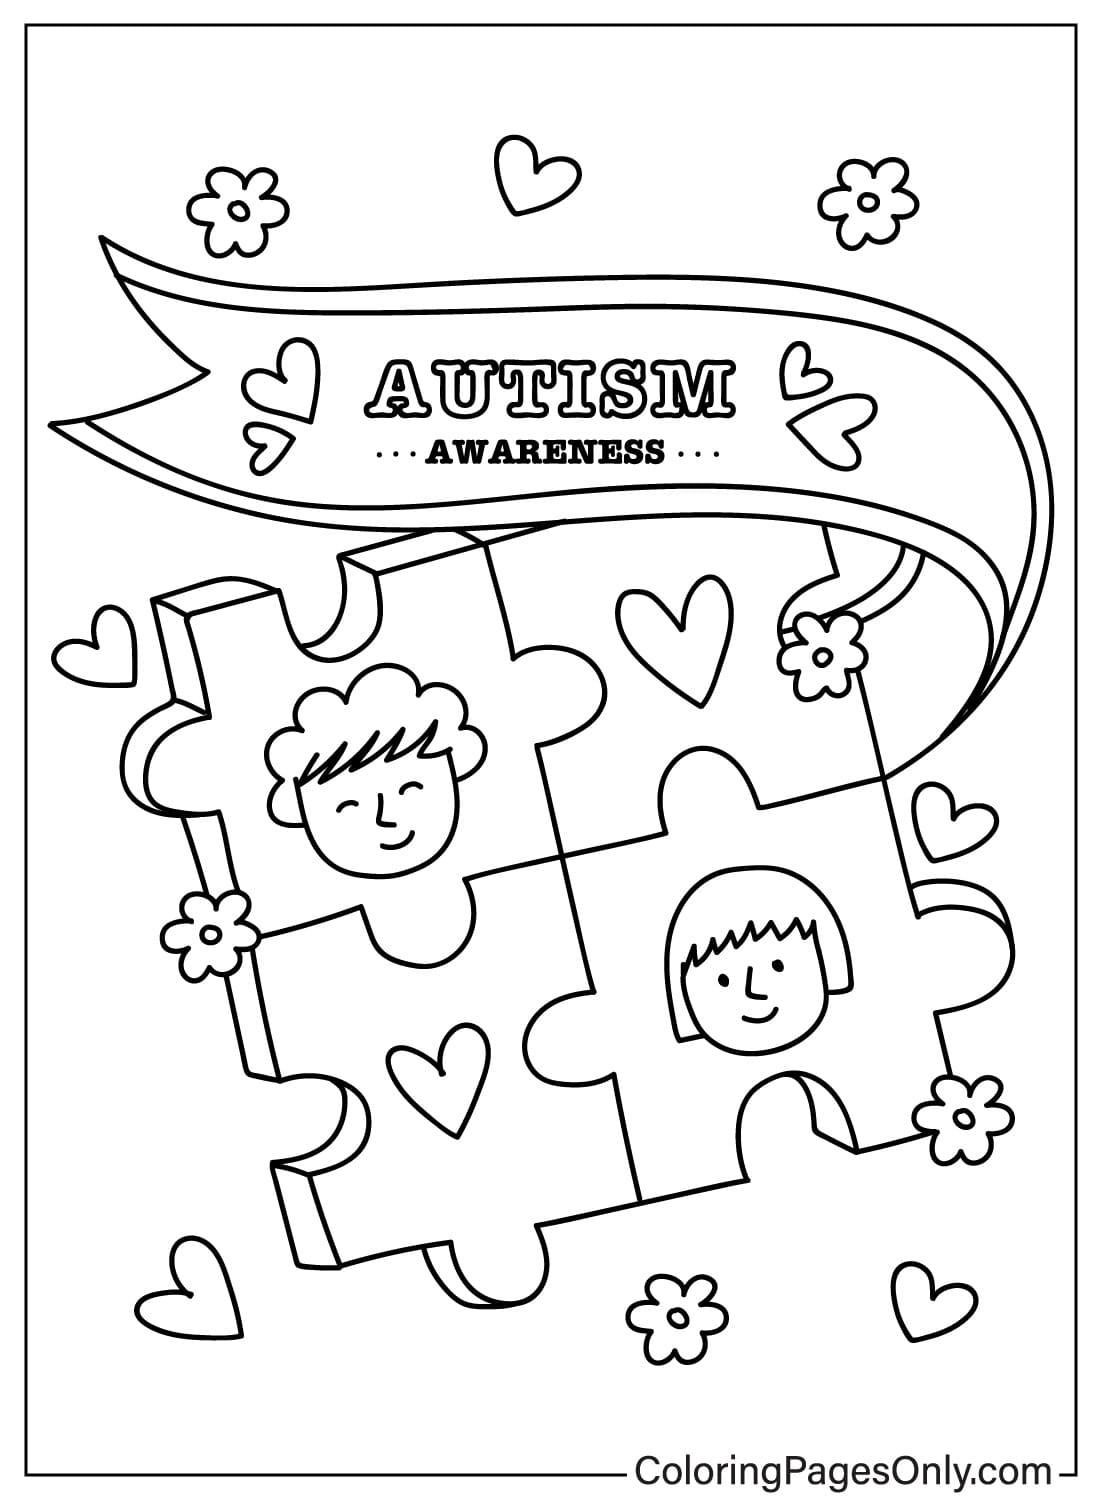 Image à colorier de sensibilisation à l'autisme de la Journée mondiale de sensibilisation à l'autisme